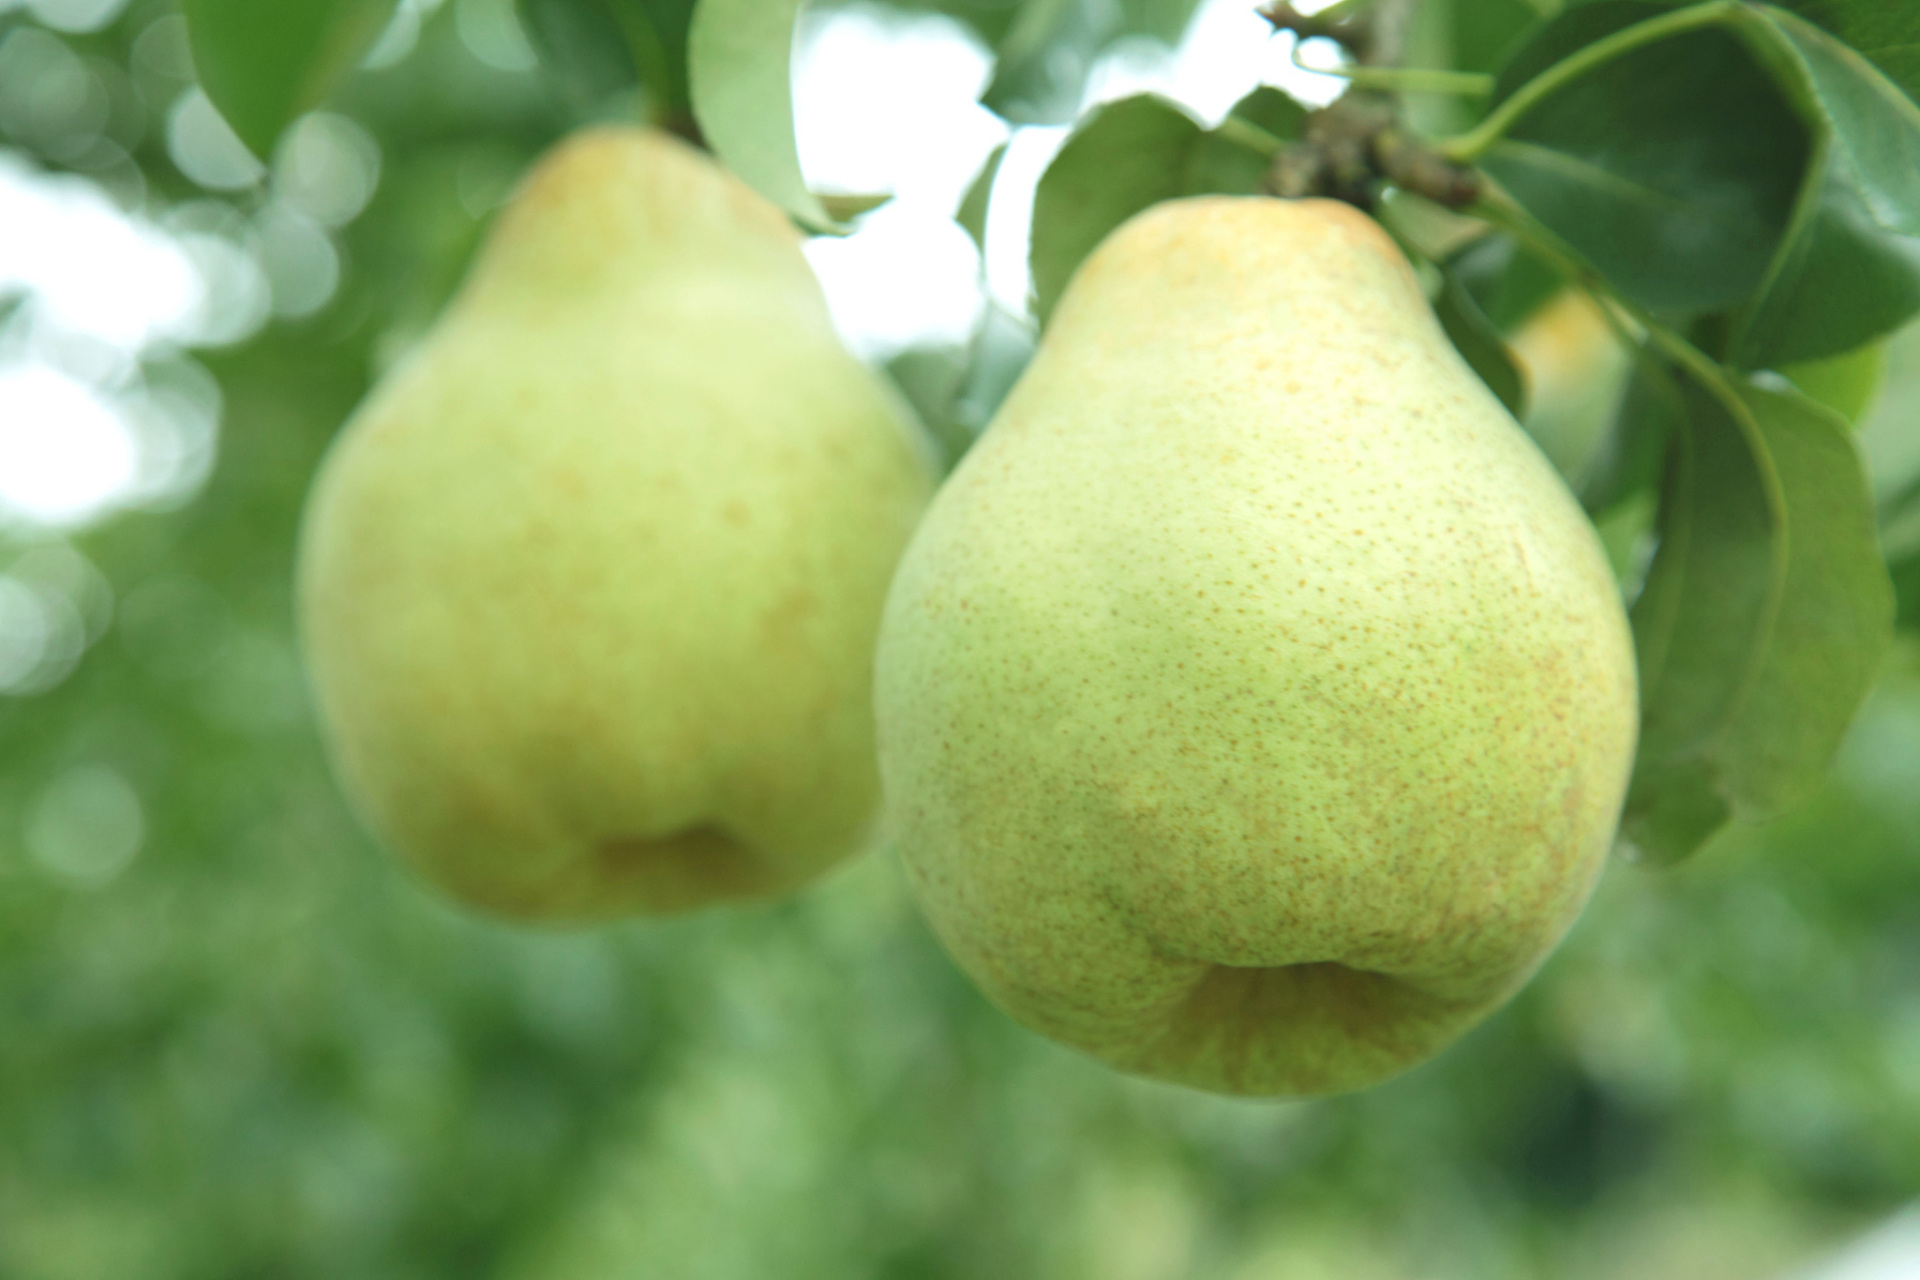 赵州雪花梨,作为石家庄的特色水果,有着悠久的种植历史,已经延续了